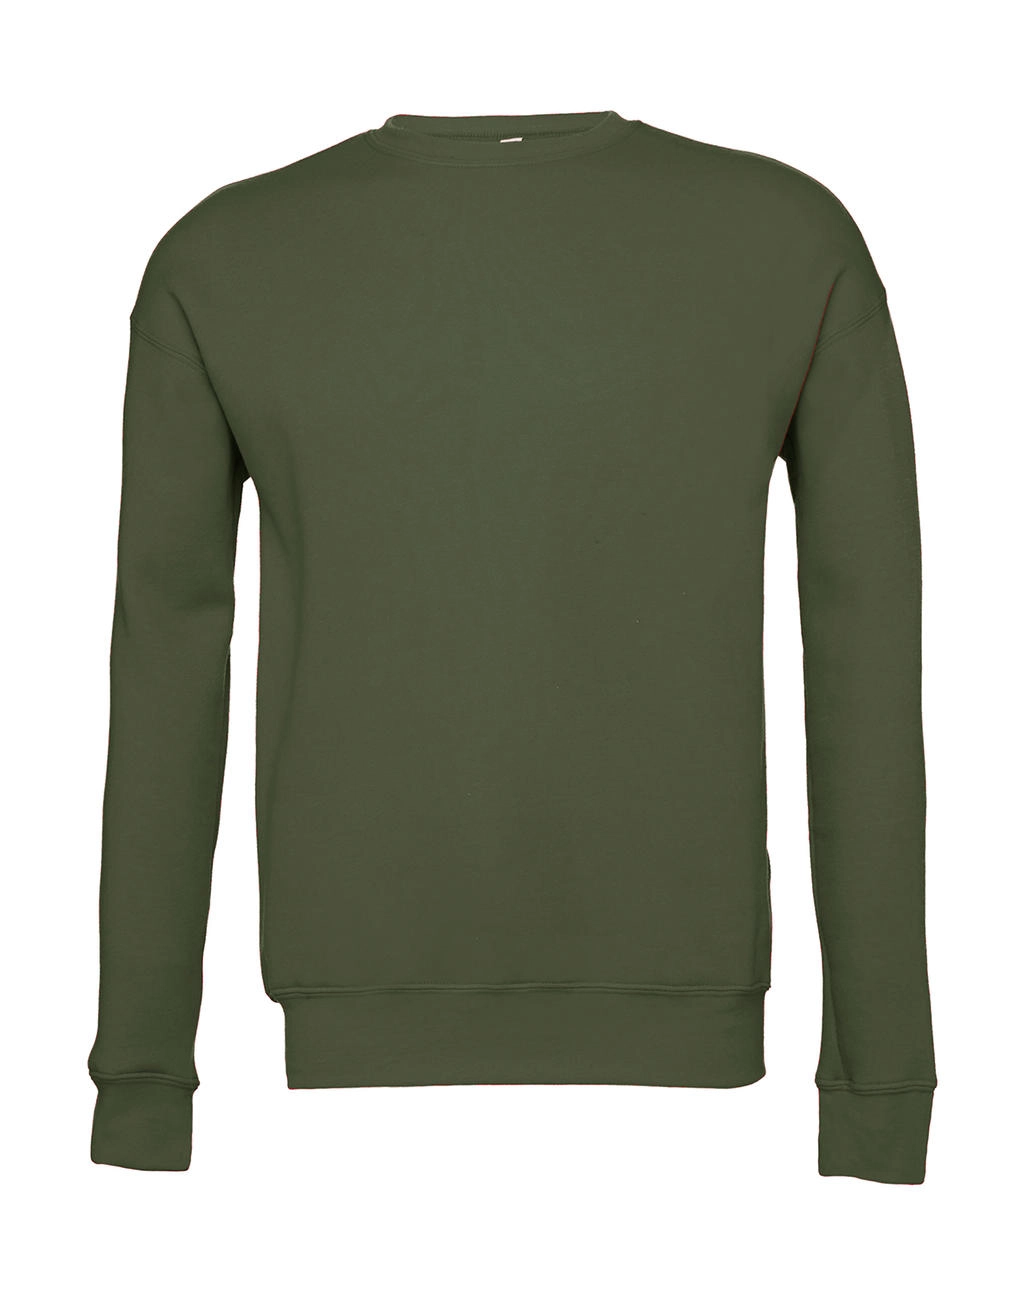 Unisex Drop Shoulder Fleece zum Besticken und Bedrucken in der Farbe Military Green mit Ihren Logo, Schriftzug oder Motiv.